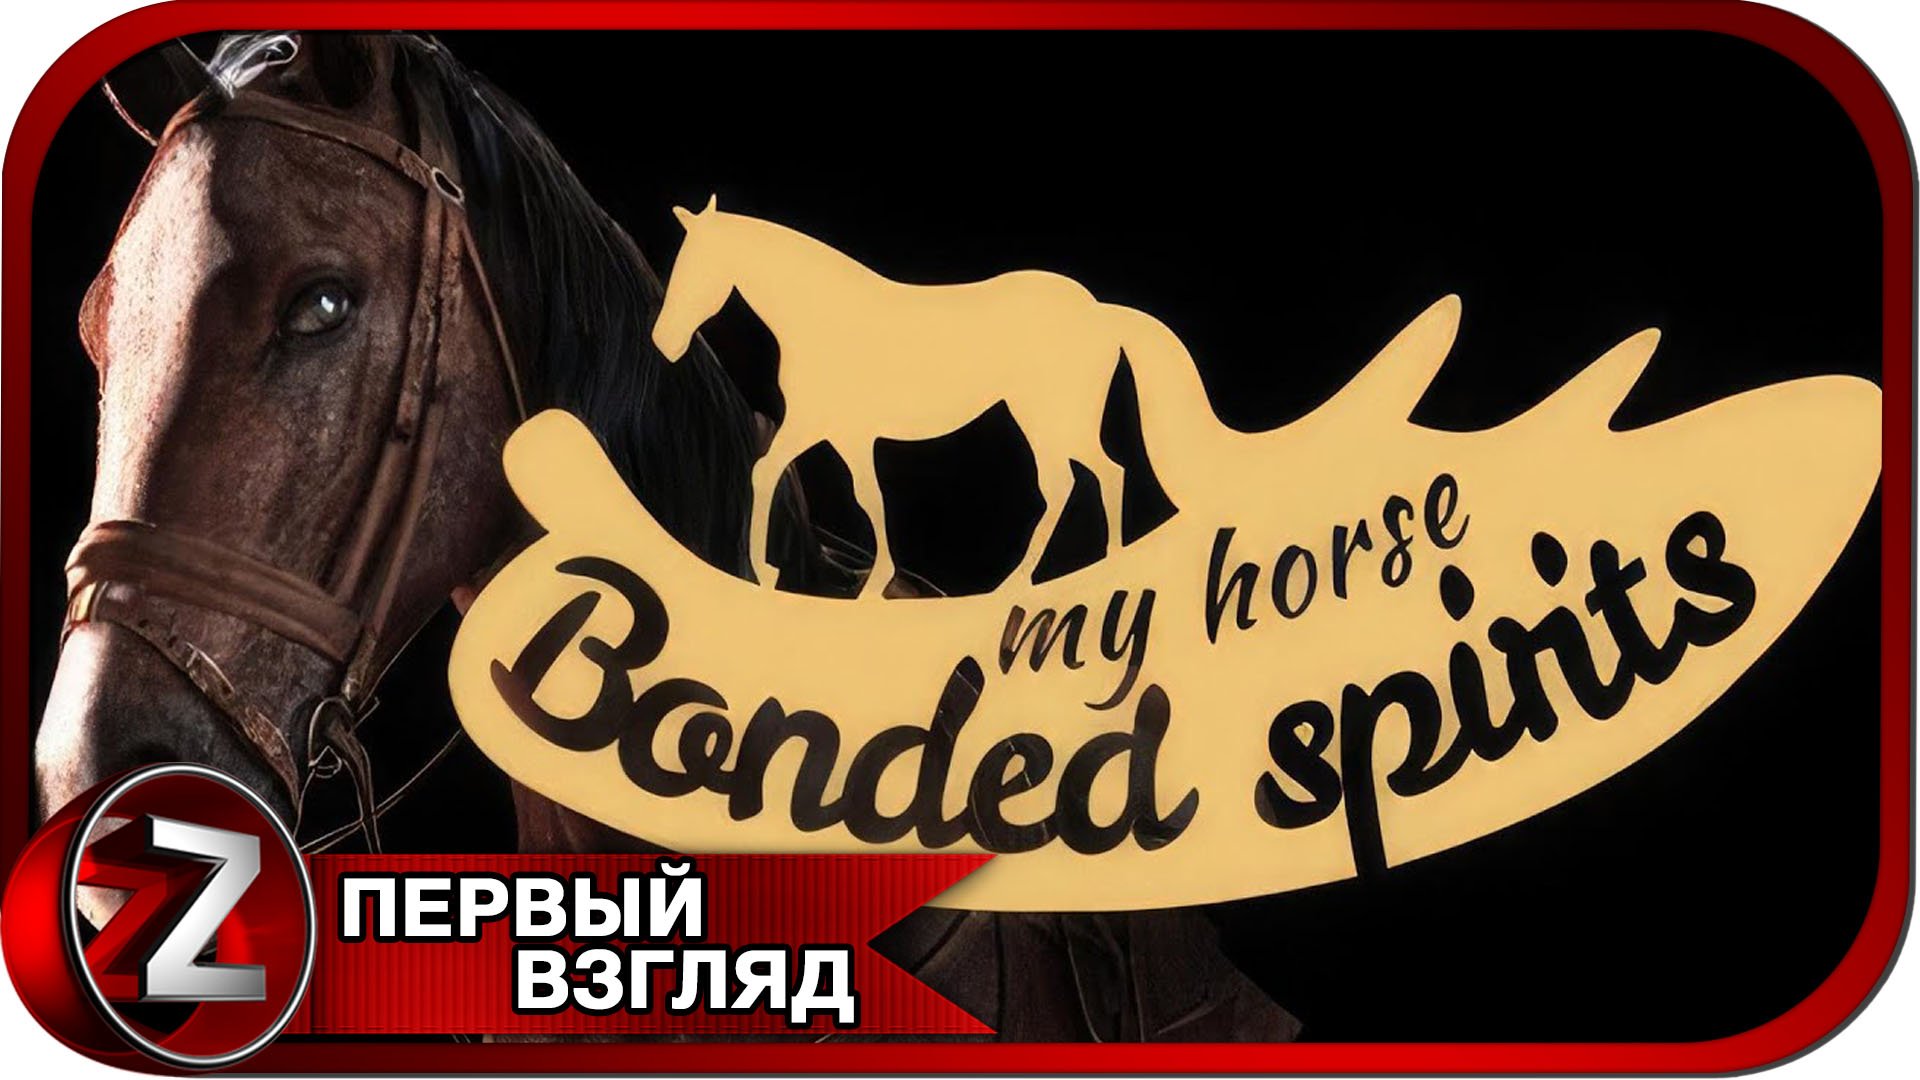 My Horse: Bonded Spirits - Prologue ➤ Занимаюсь коневодством ➤ Первый Взгляд